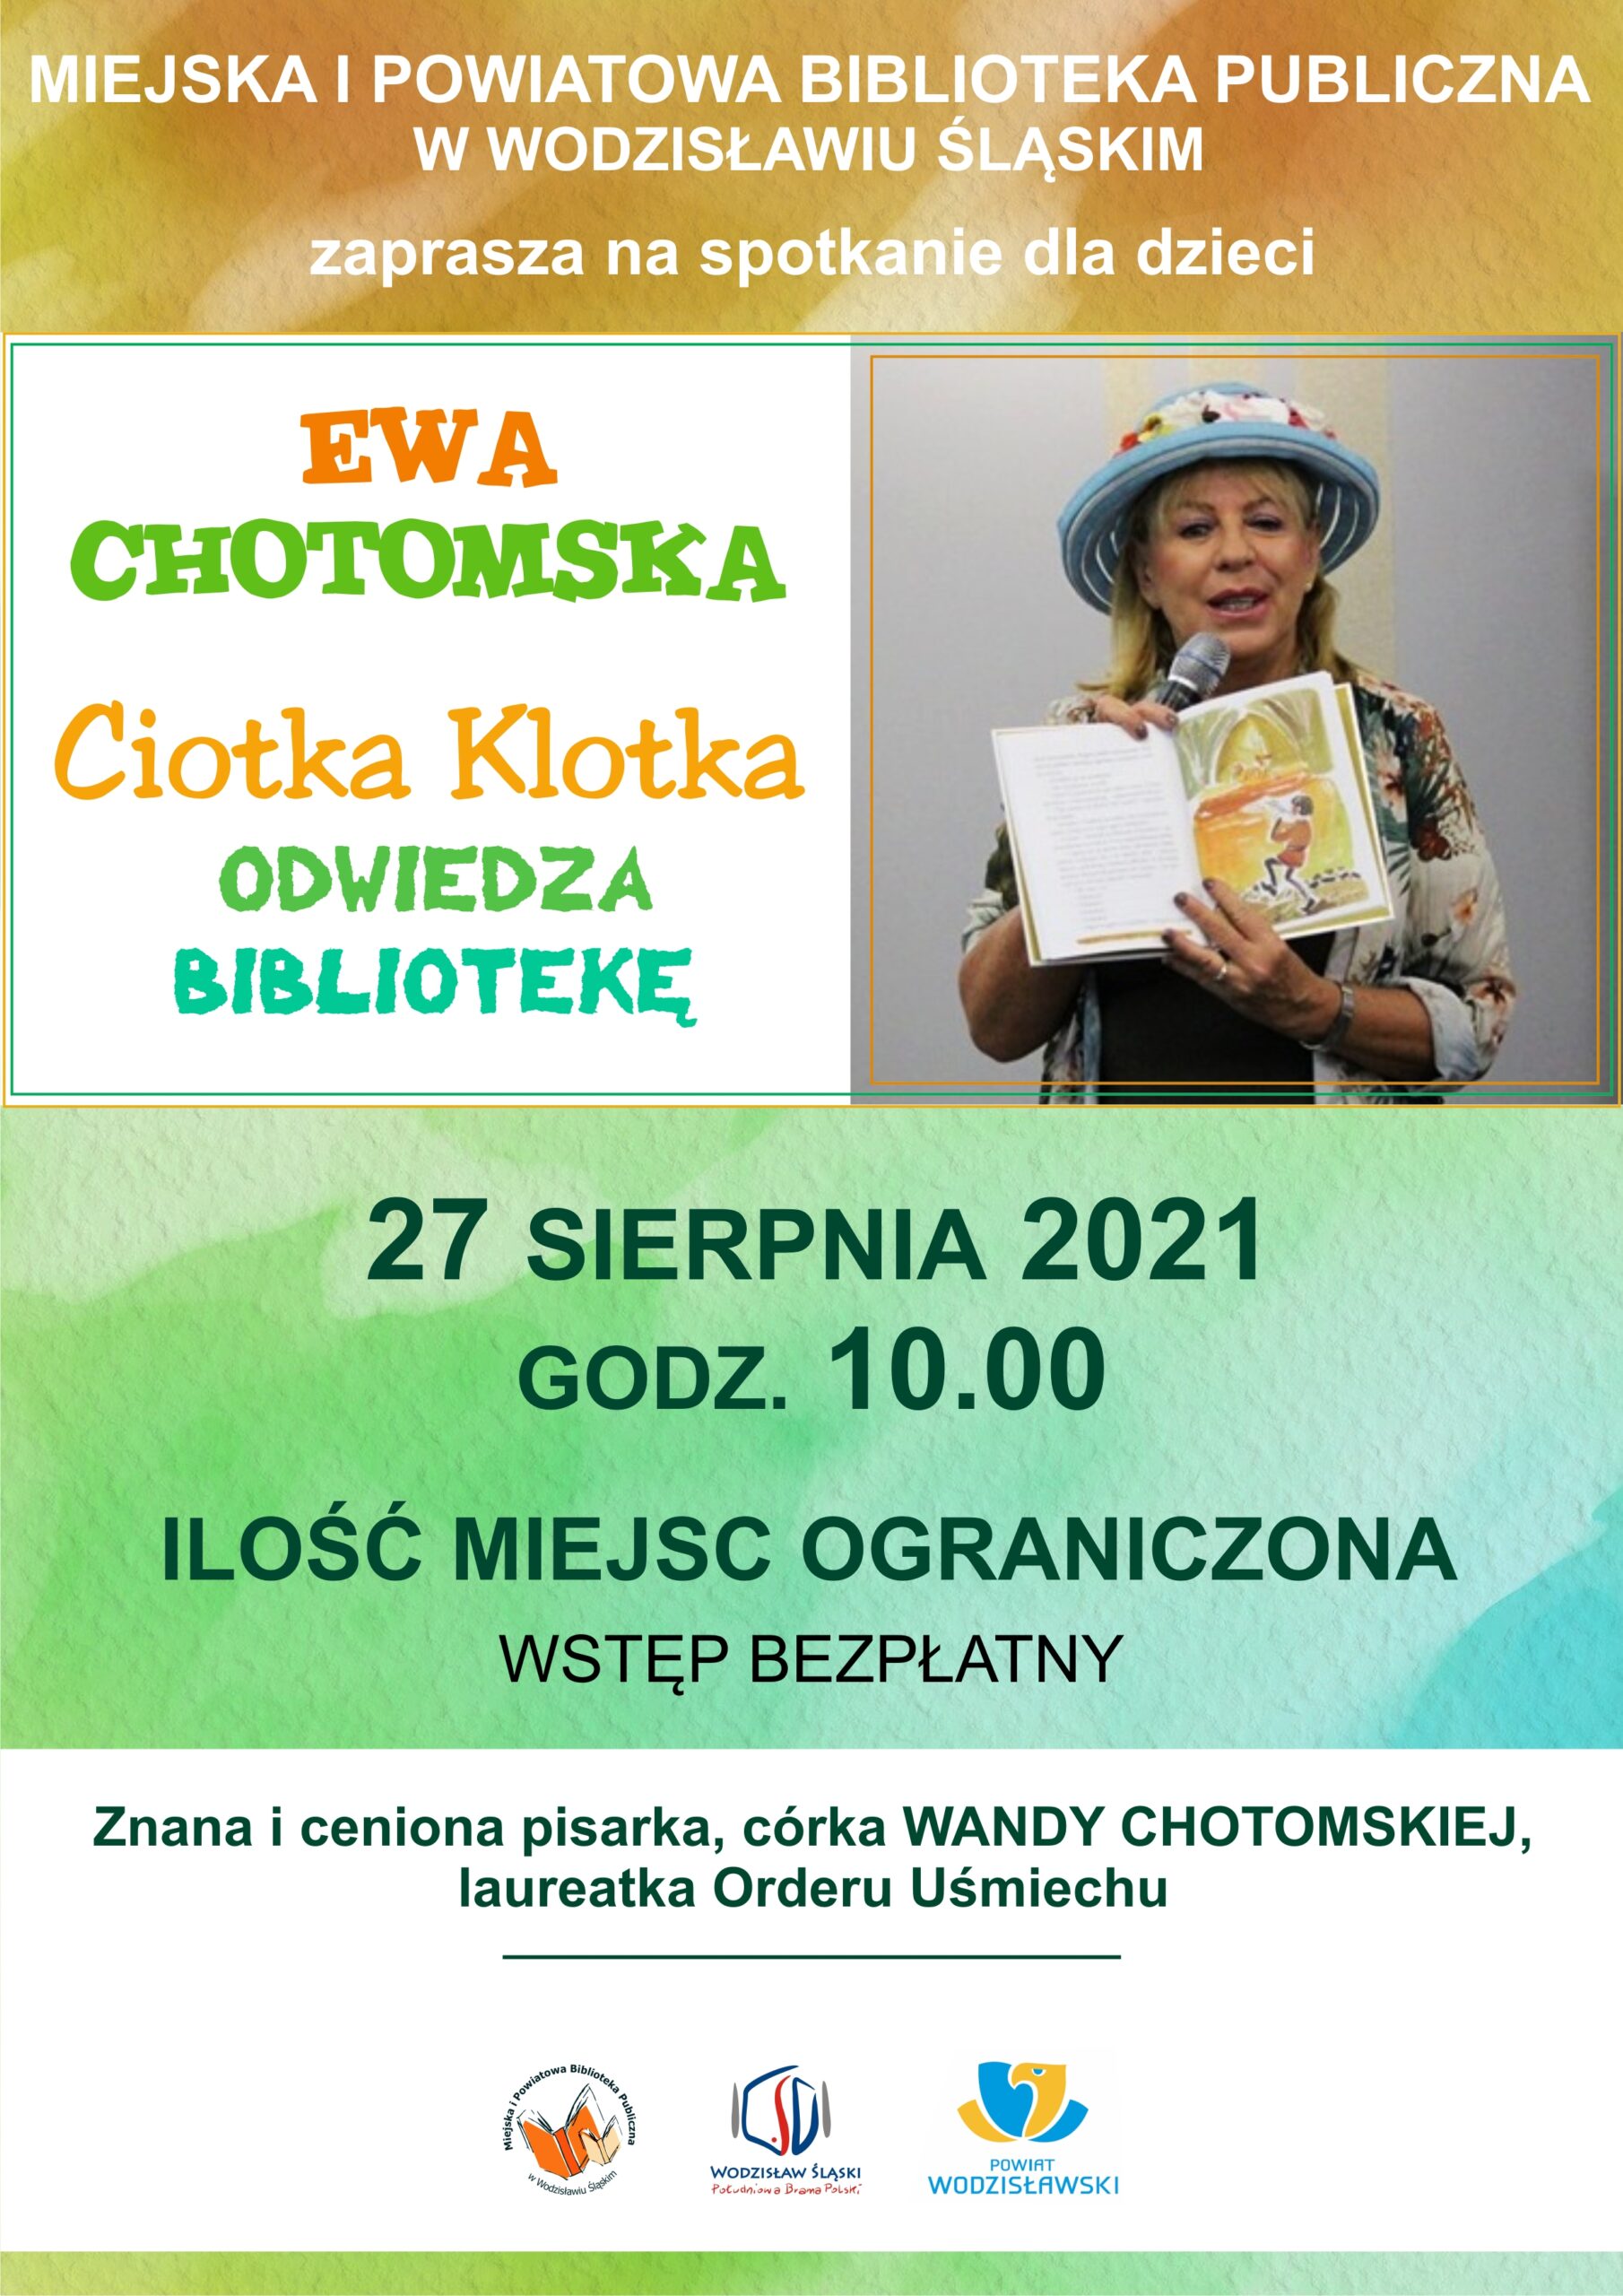 Ewa Chotomska - Ciotka Klotka odwiedza Bibliotekę, spotkanie autorskie - 27 sierpnia 2021, godz. 10.00